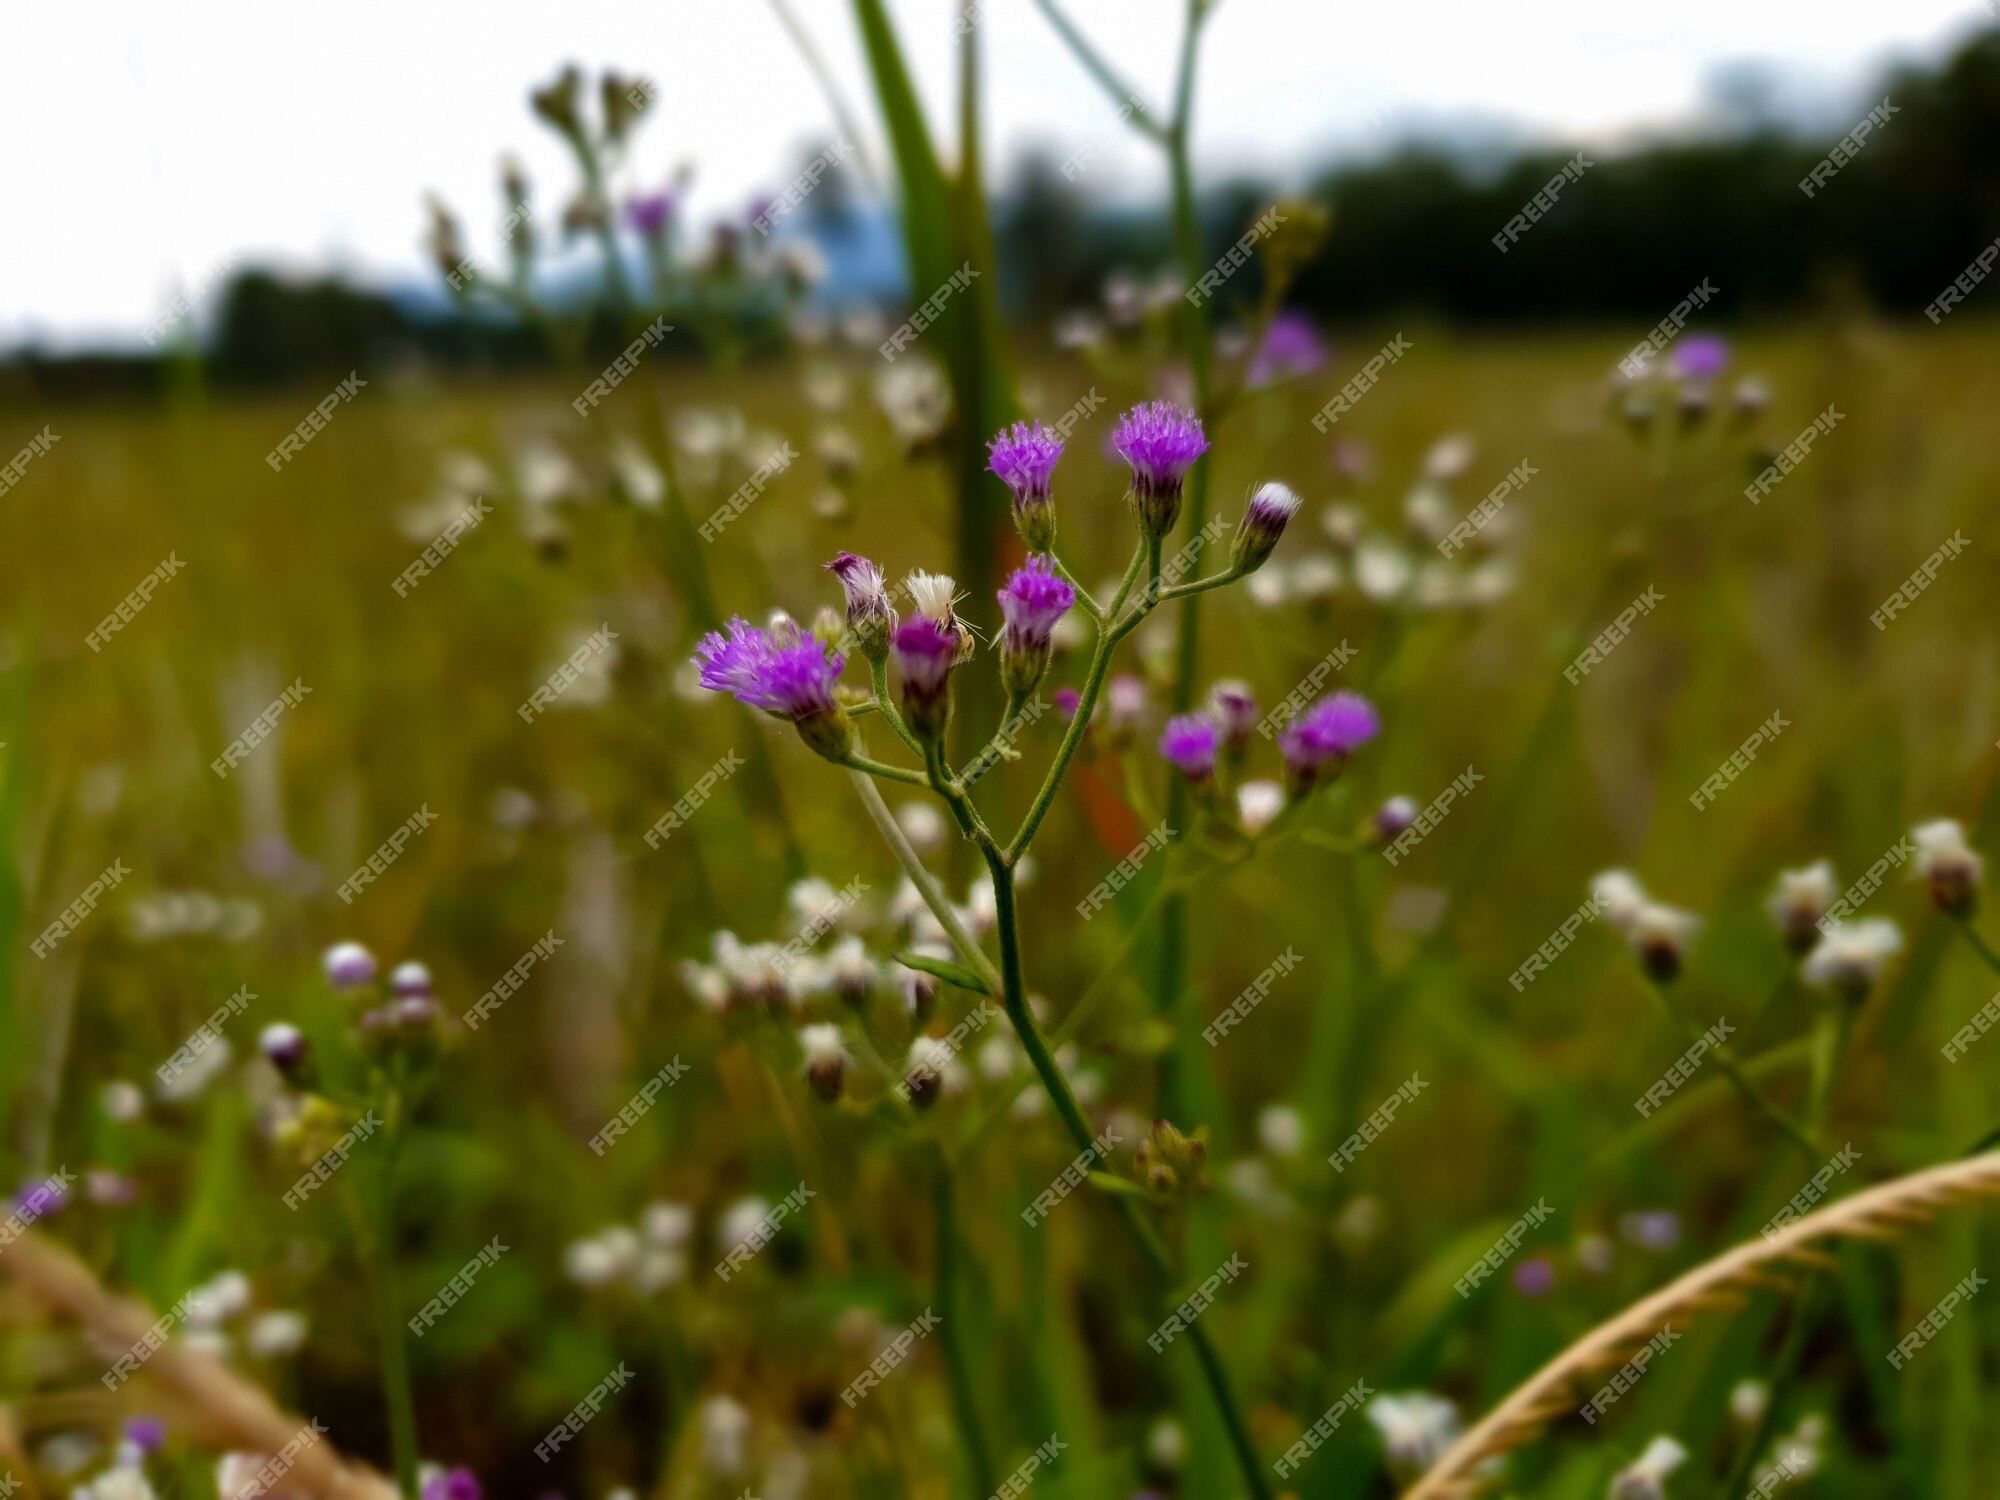 Planta de hierba de maleza de flor morada en zona agrícola | Foto Premium